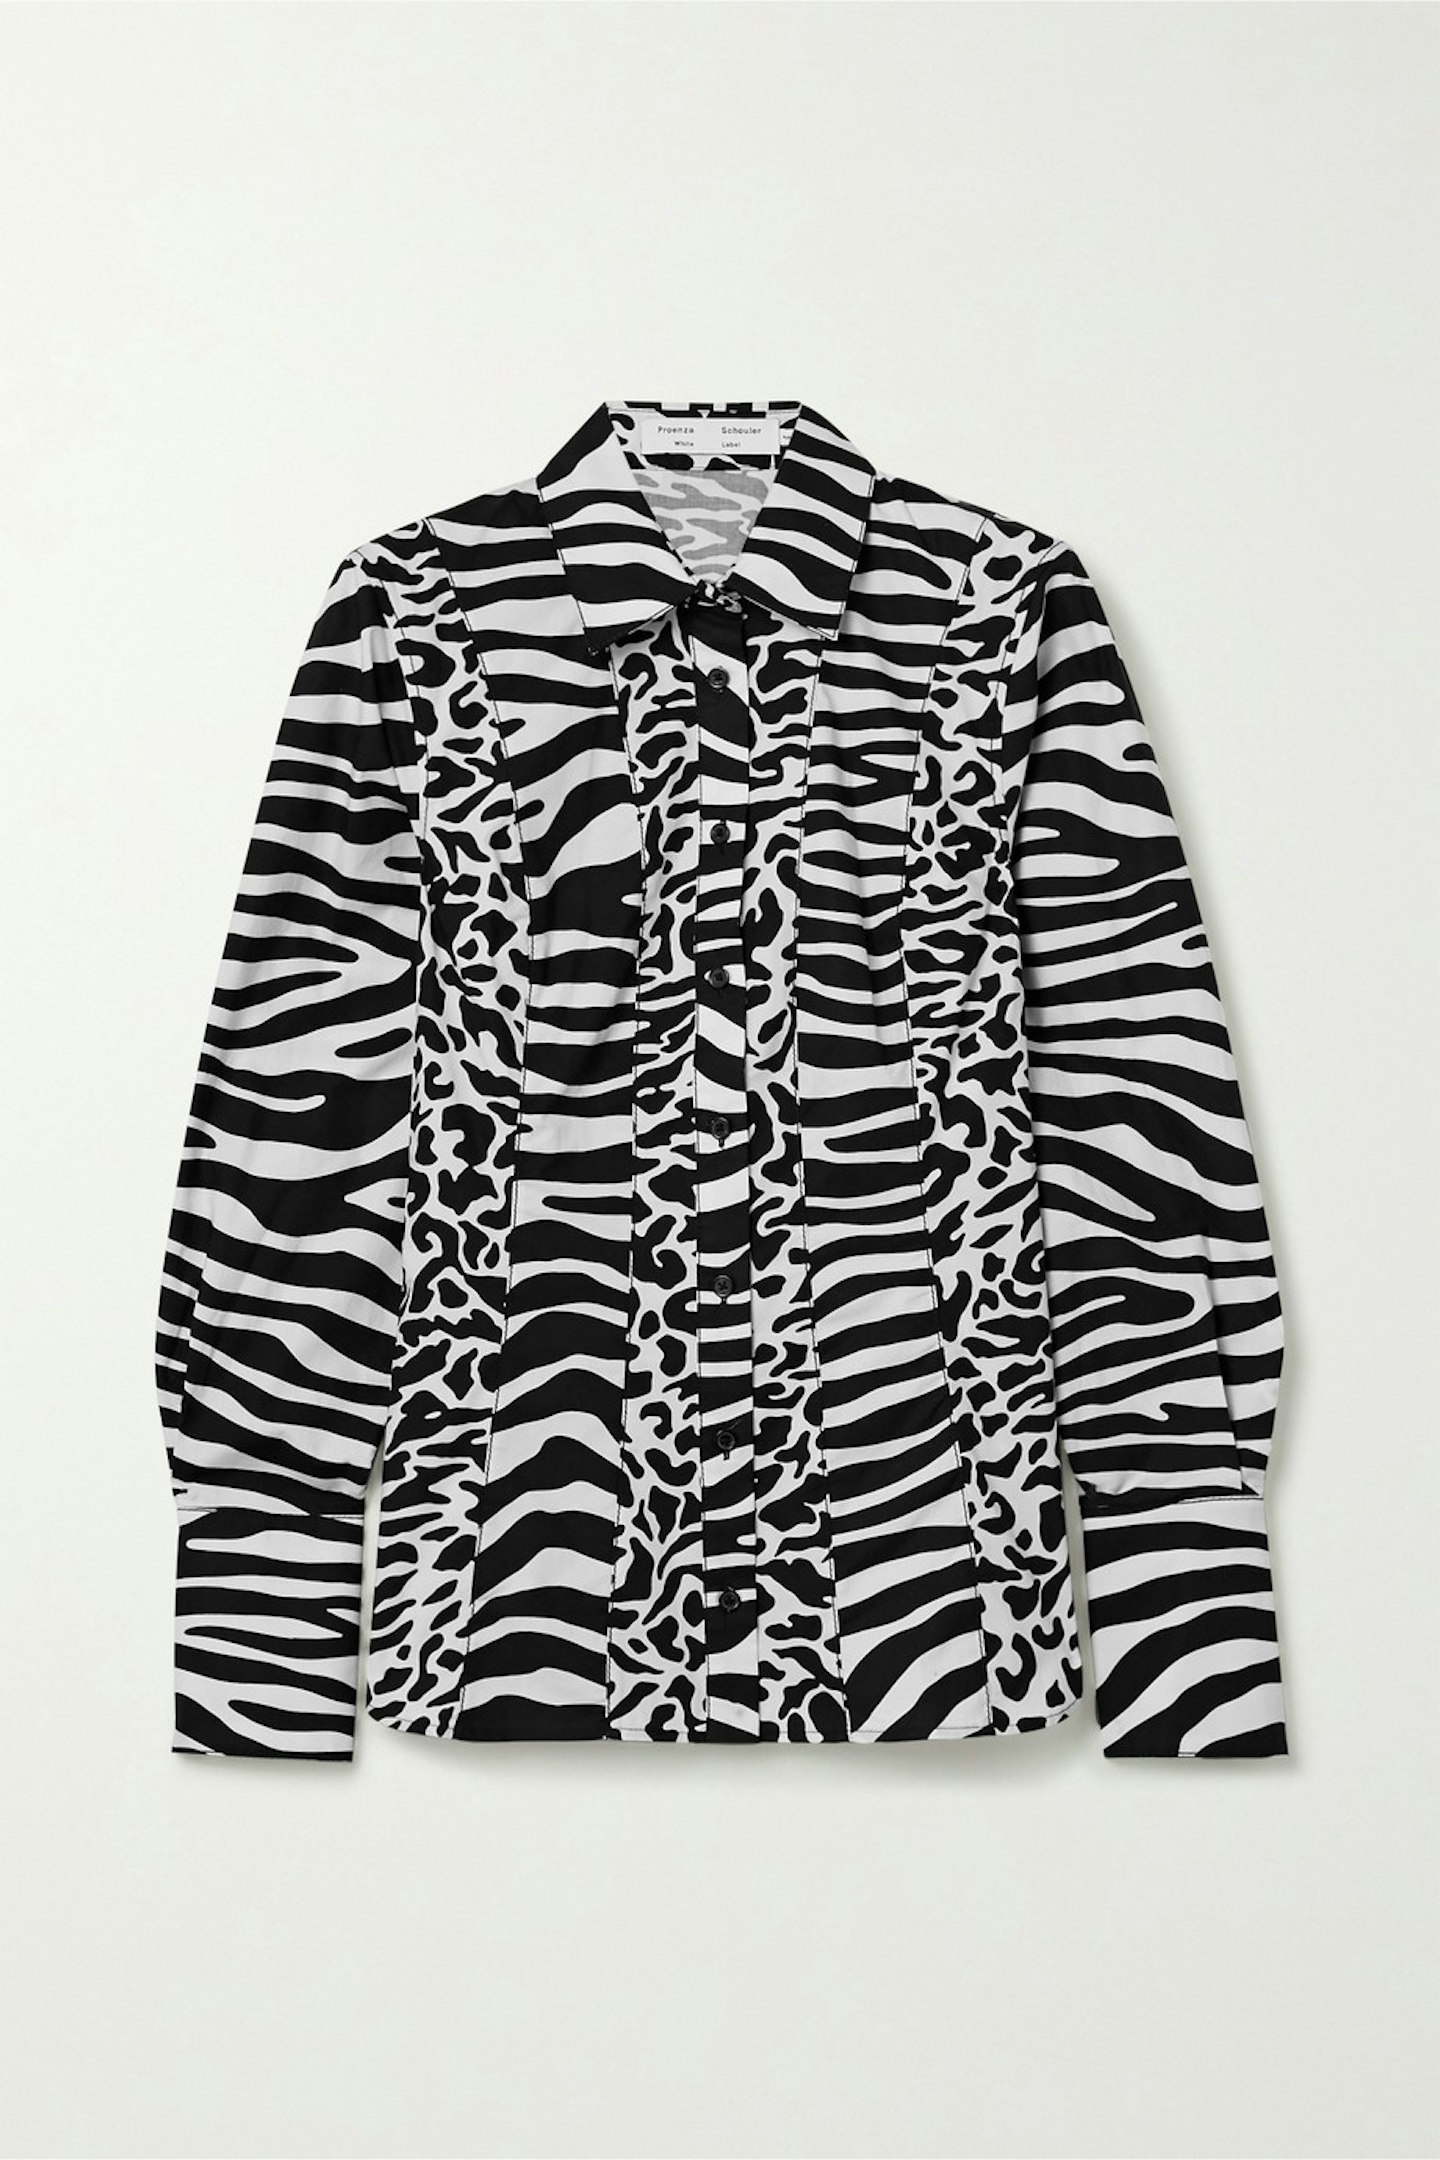 PROENZA SCHOULER WHITE LABEL, Animal Print Cotton poplin Shirt, £189